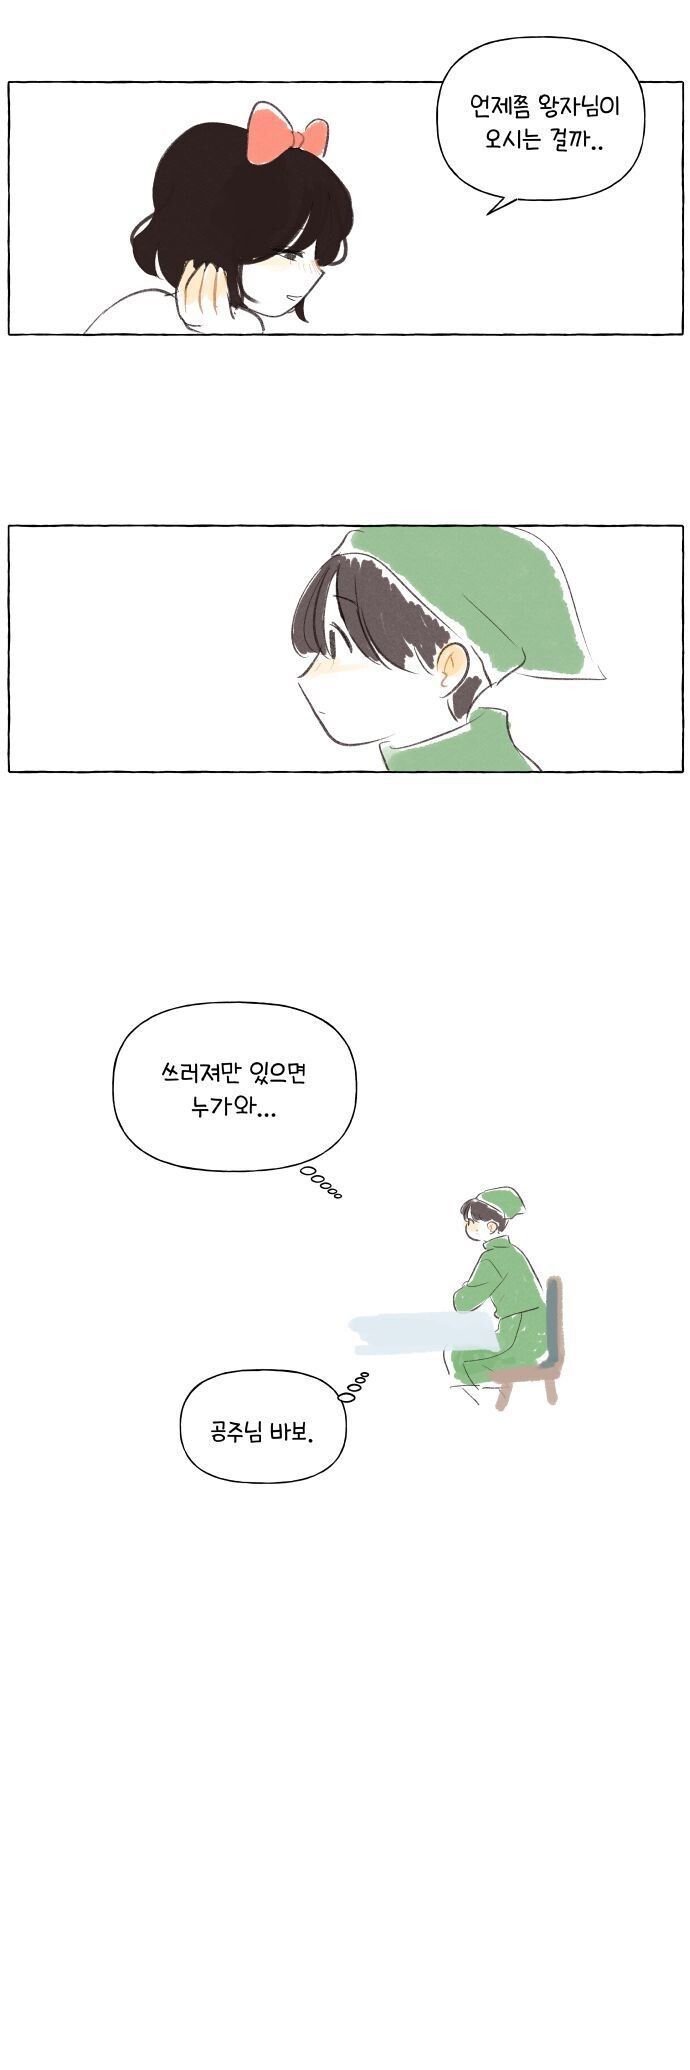 백설공주와 난쟁이 - 순애 채널 011.jpg